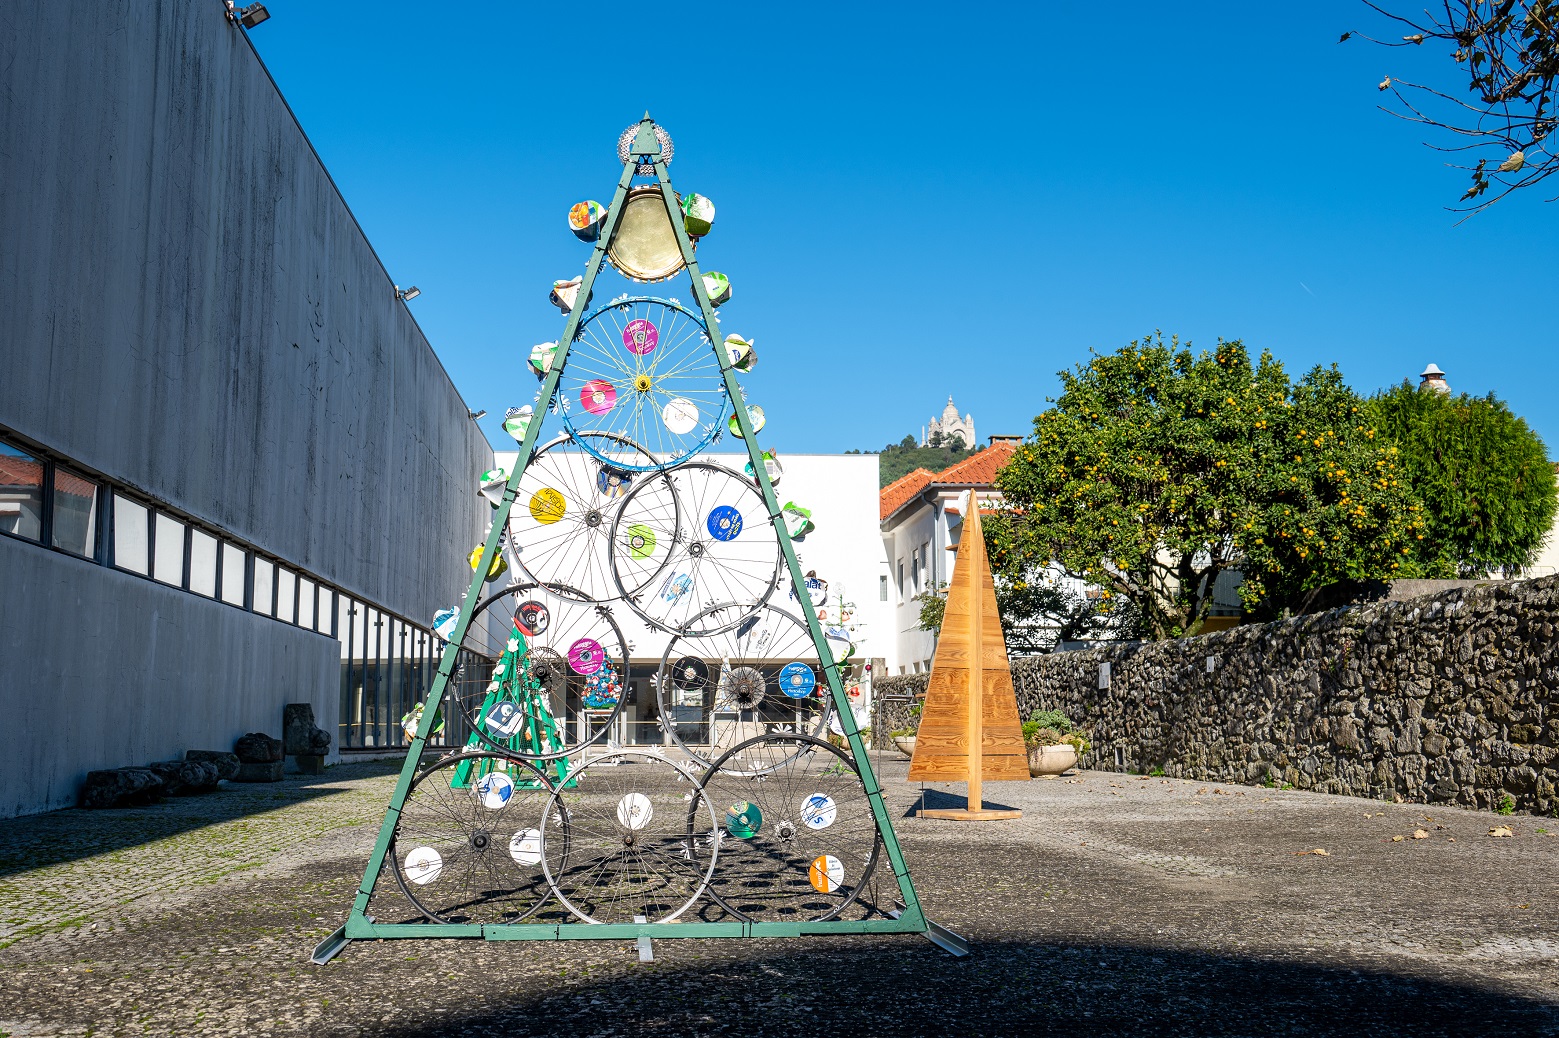 Reciclagem inspira exposição de pinheirinhos de Natal no Museu de Artes Decorativas